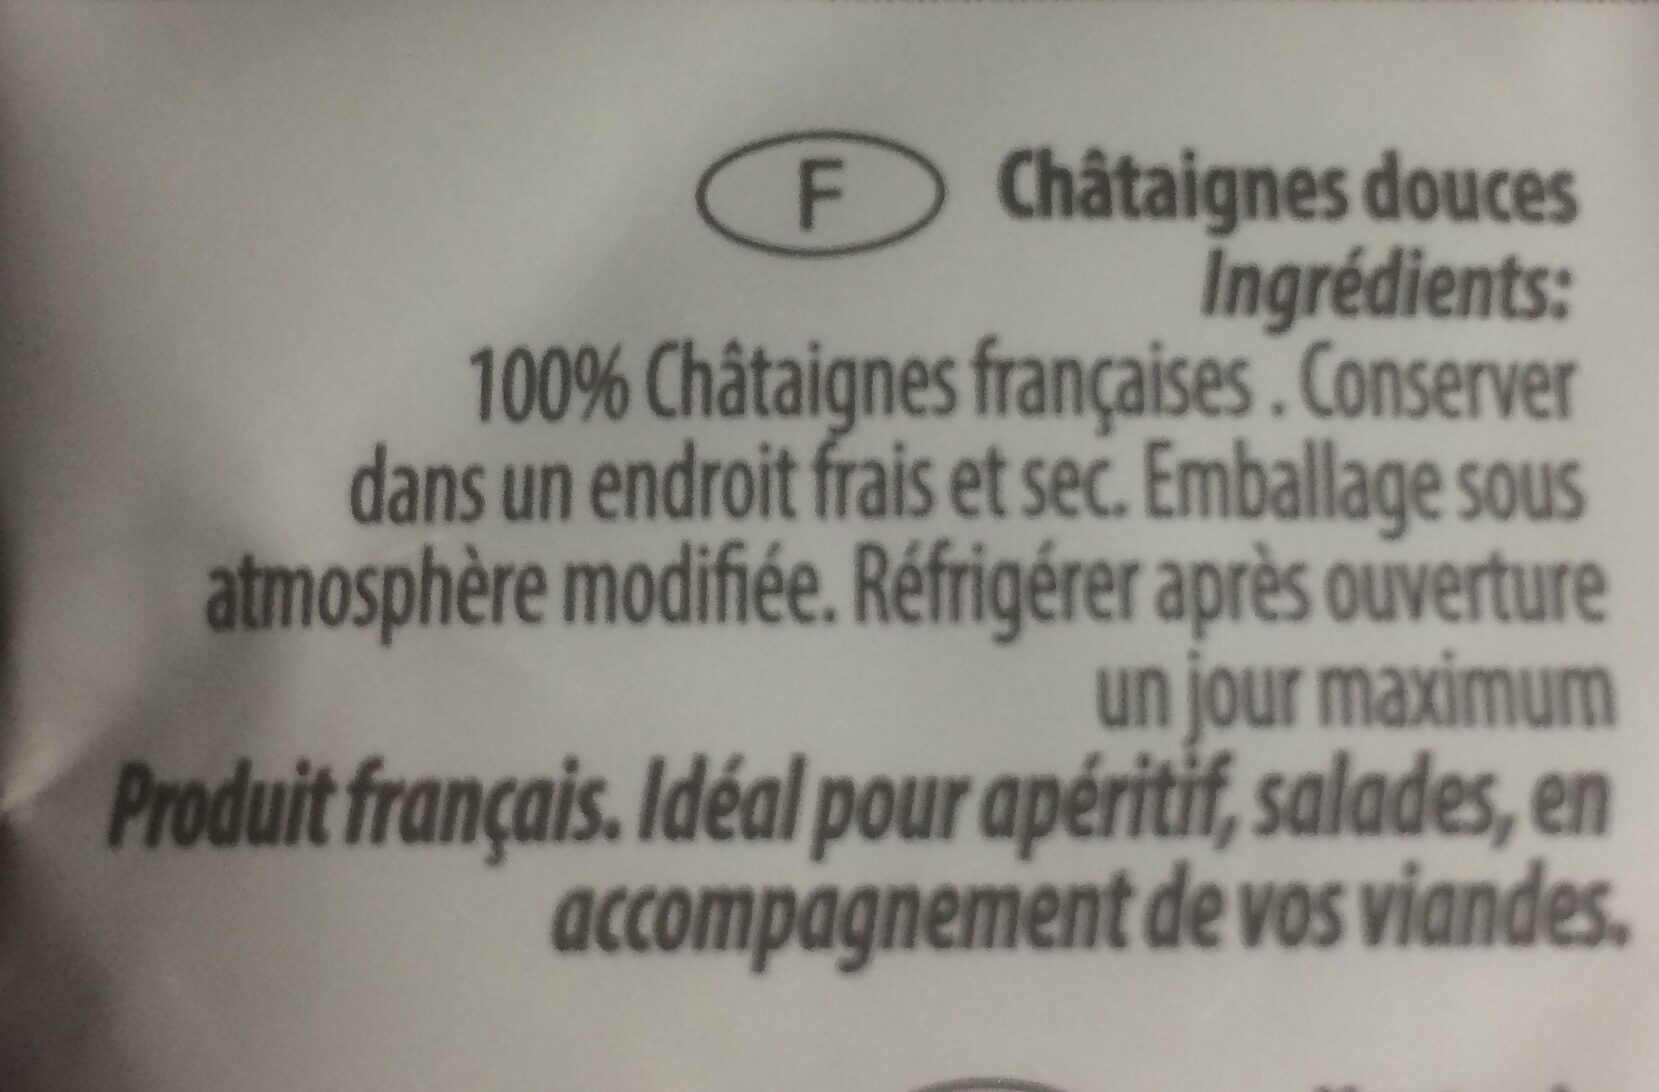 Chataignes de france moelleuses - Ingredients - fr